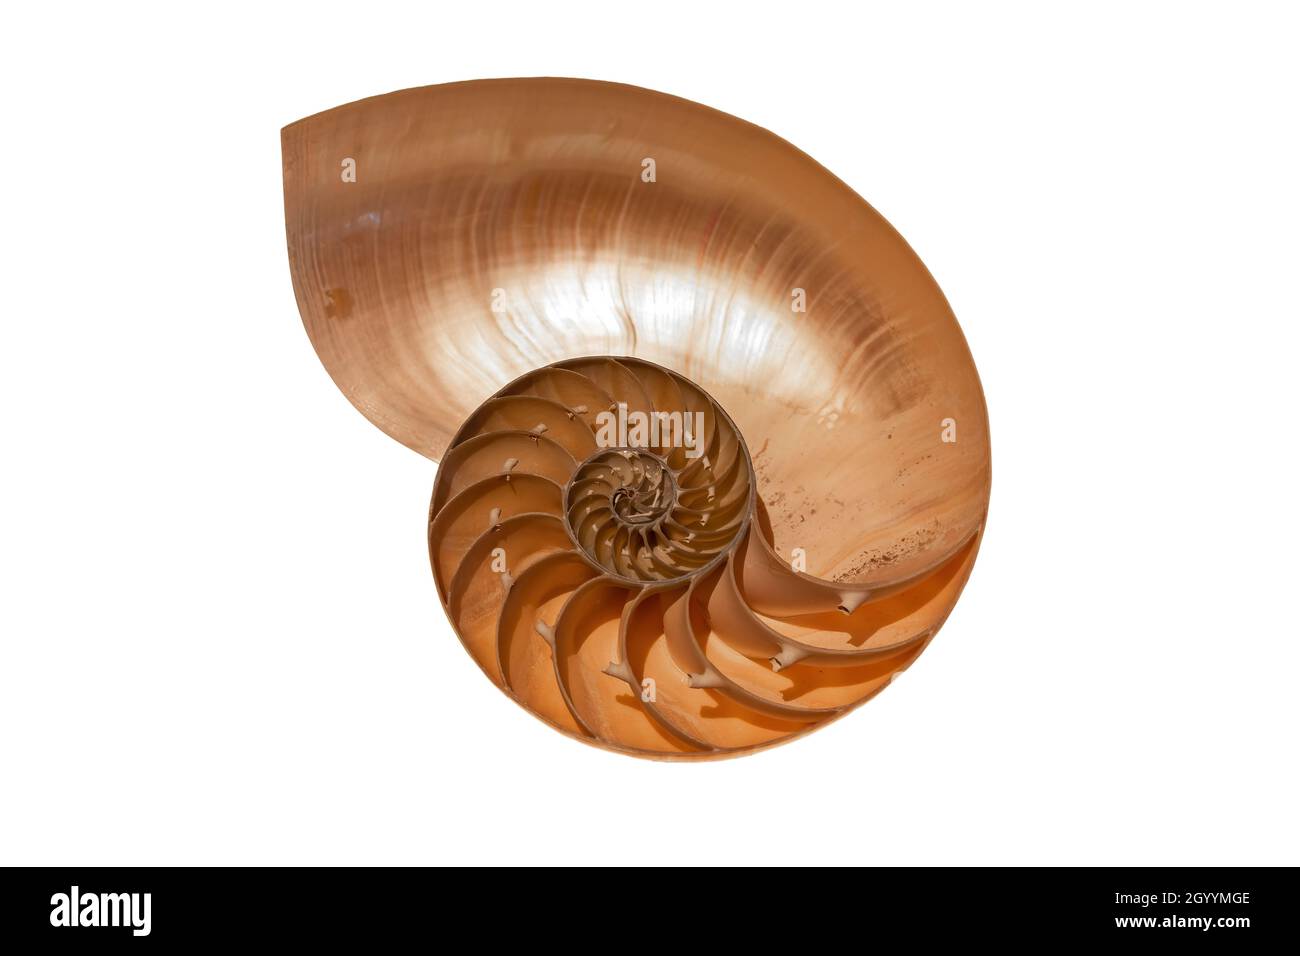 Coupe transversale de la coque d'un Nautilus.Le nautilus est un mollusque marin pélagique de la famille des Nautilidae. Banque D'Images